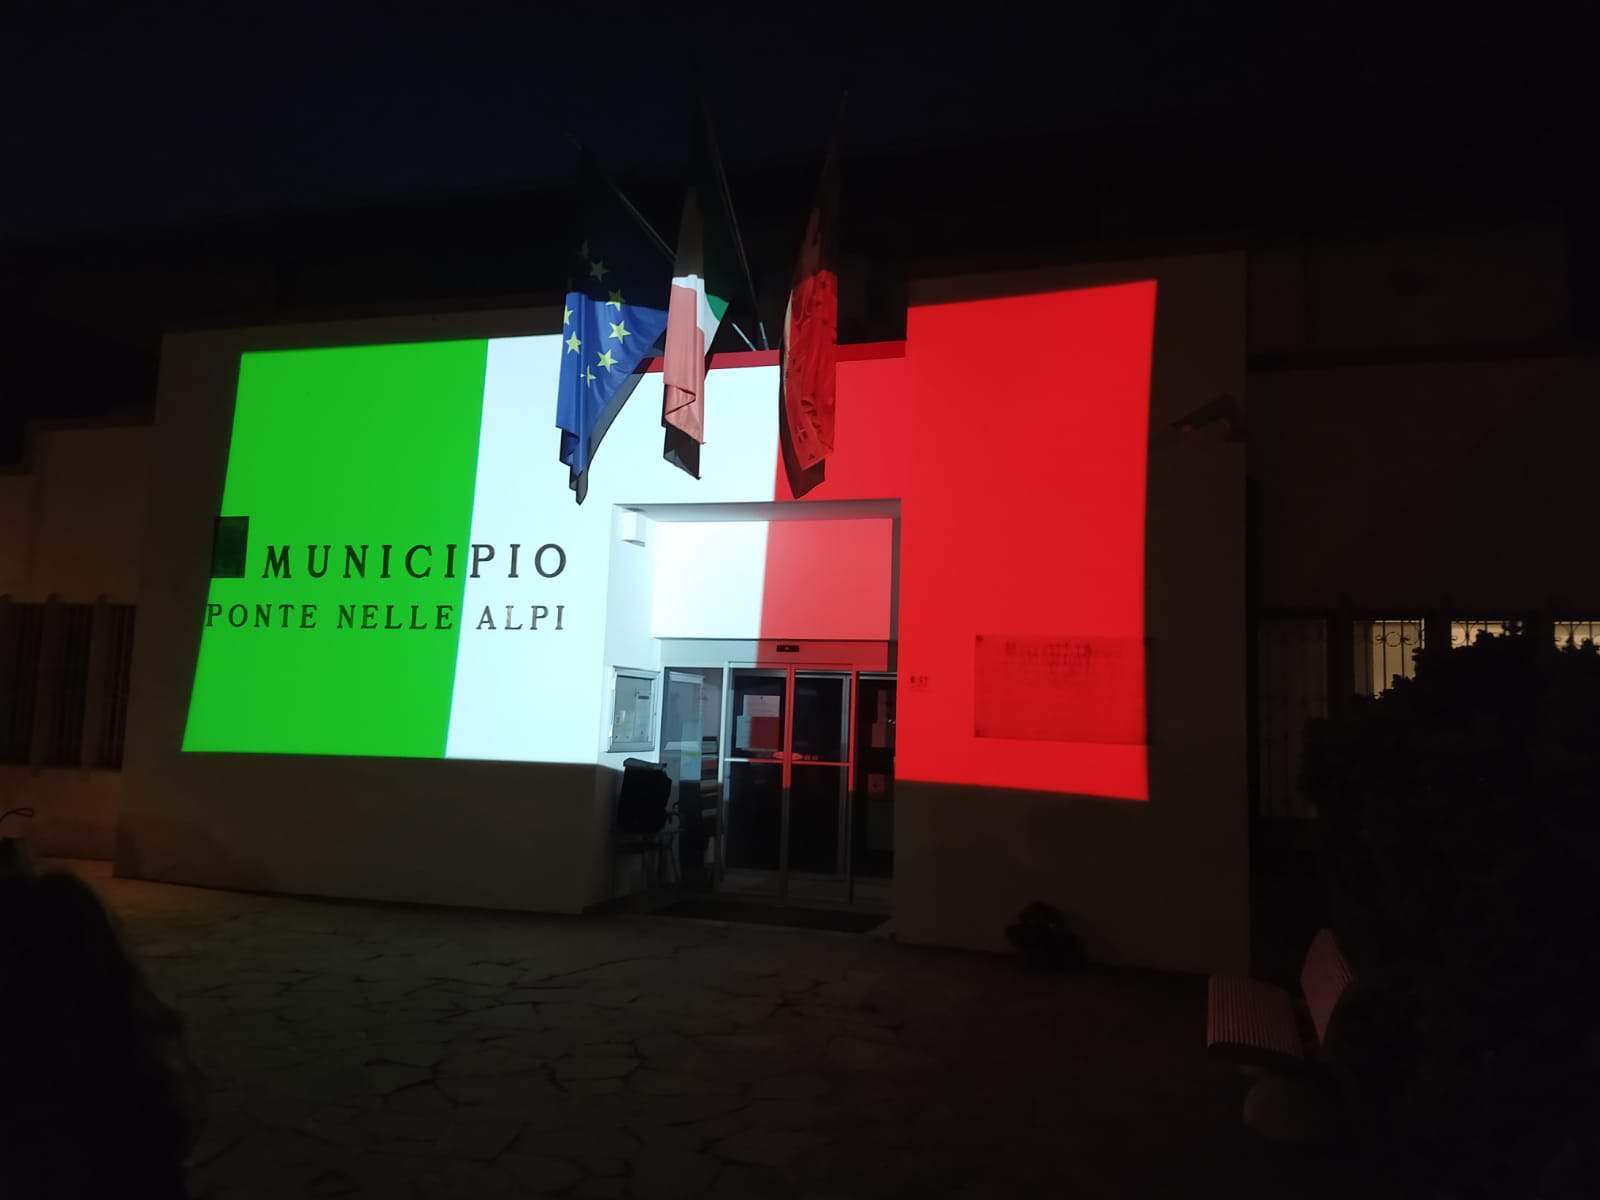 projection of the tricolor Ponte delle alpi